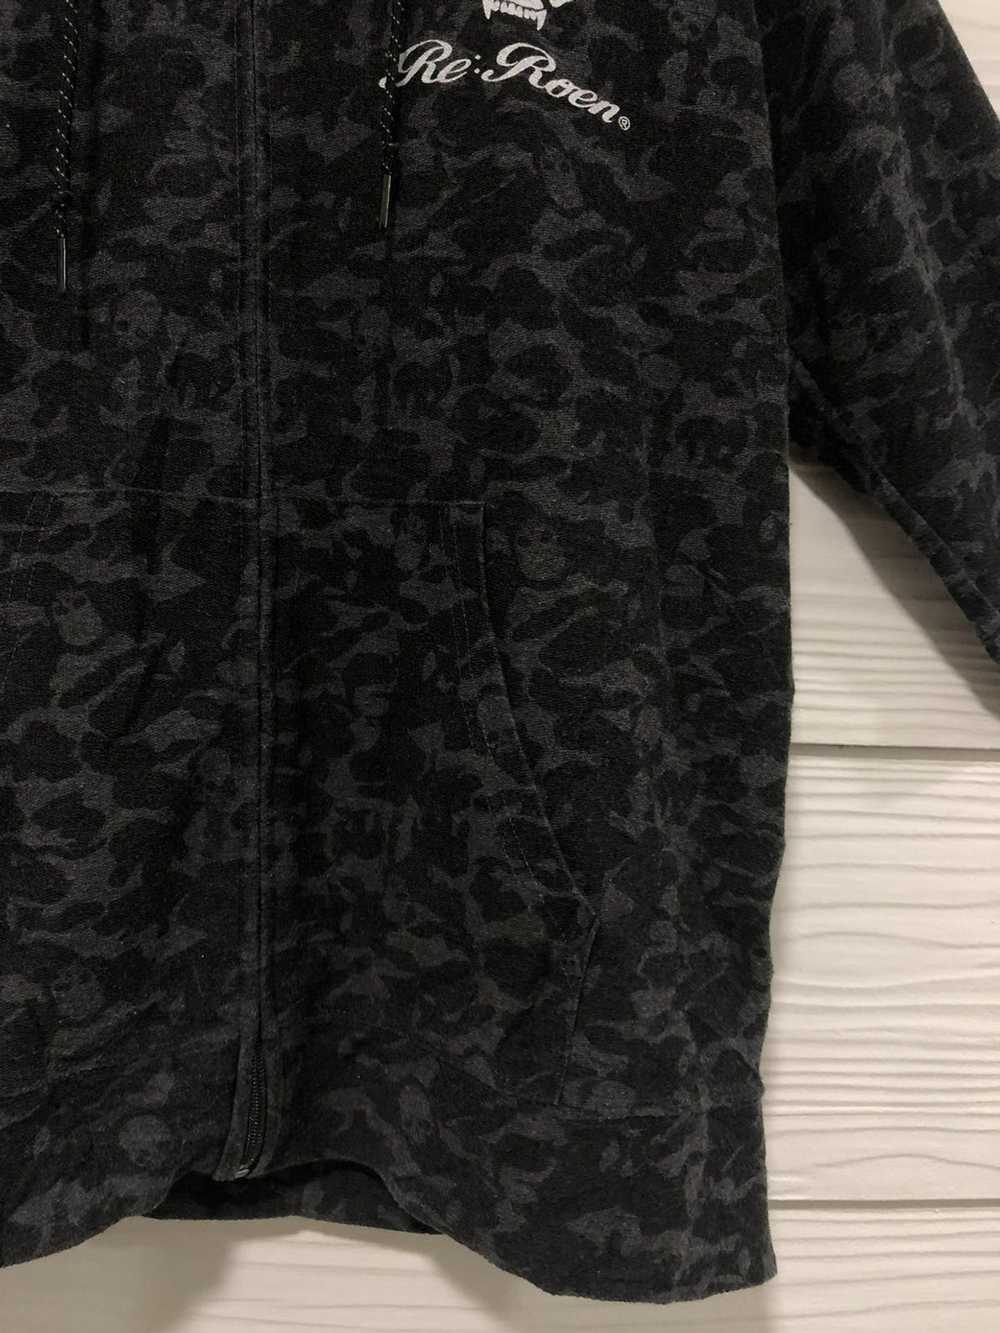 Roen × Skulls Roen skuul over print hoodie inspir… - image 4